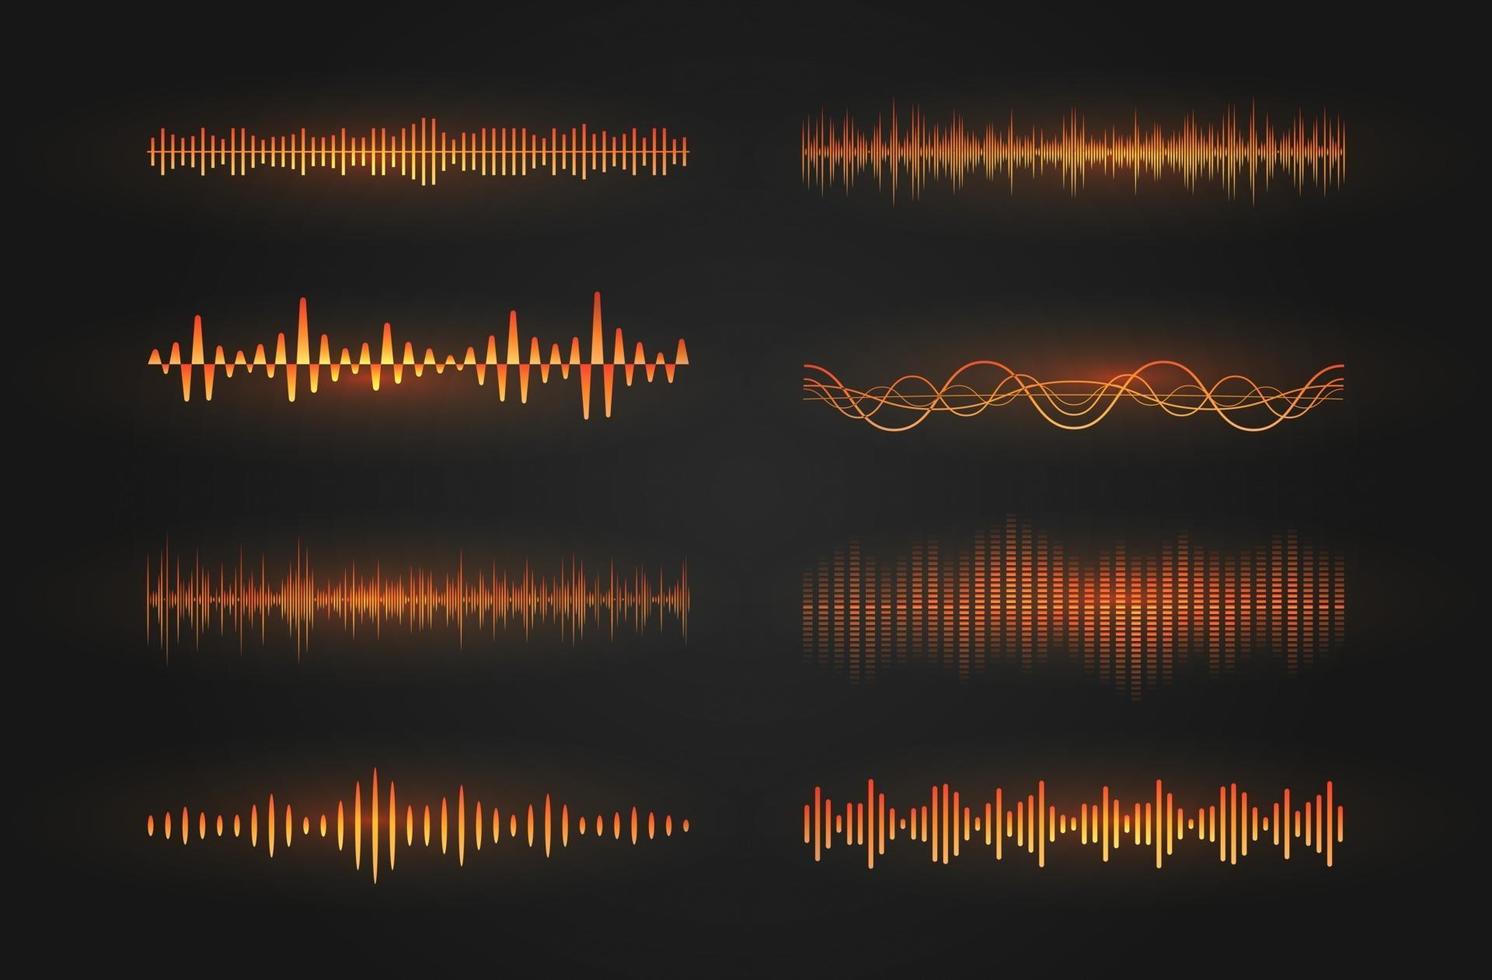 jeu d'icônes d'ondes sonores. lignes lumineuses représentant un son ou une onde radio, un égaliseur de musique ou un cardiogramme numérique, un modèle d'élément de conception graphique. illustration vectorielle isolée. vecteur